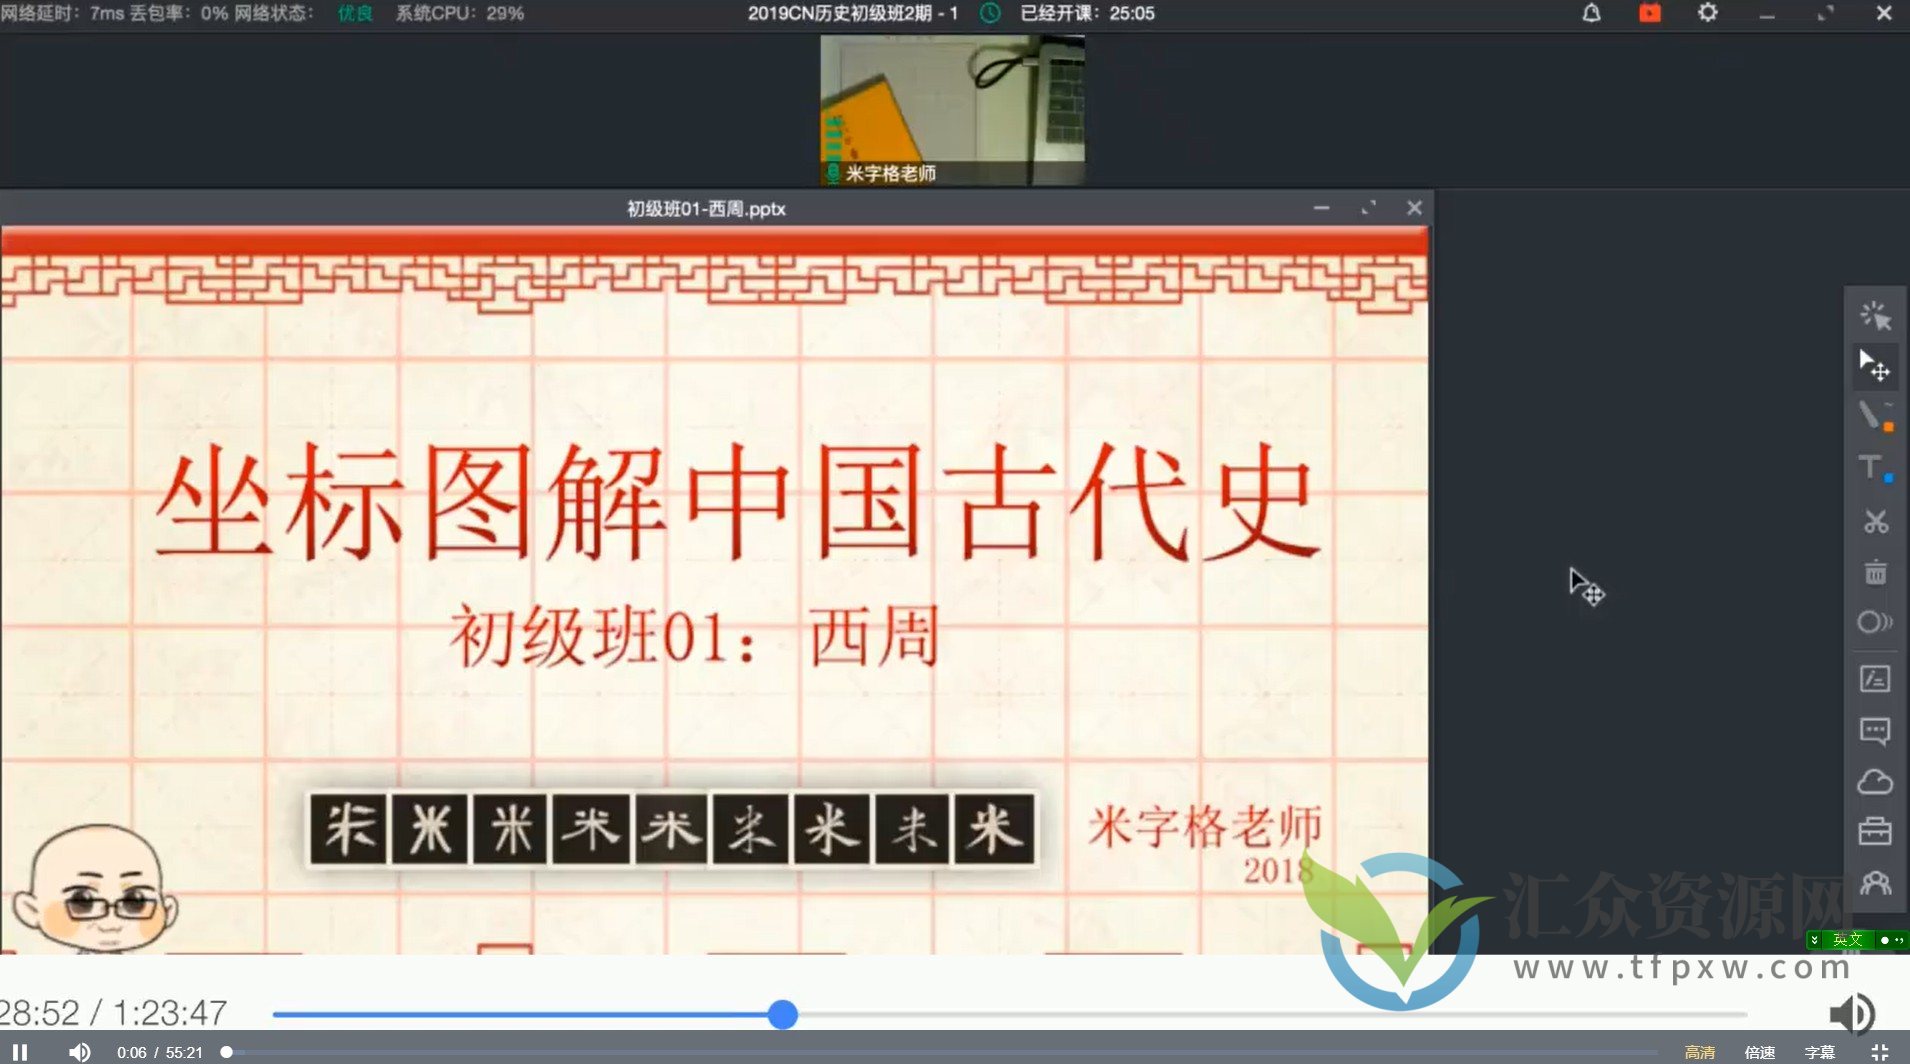 米字格老师《坐标图解中国古代史》暑期班课程插图